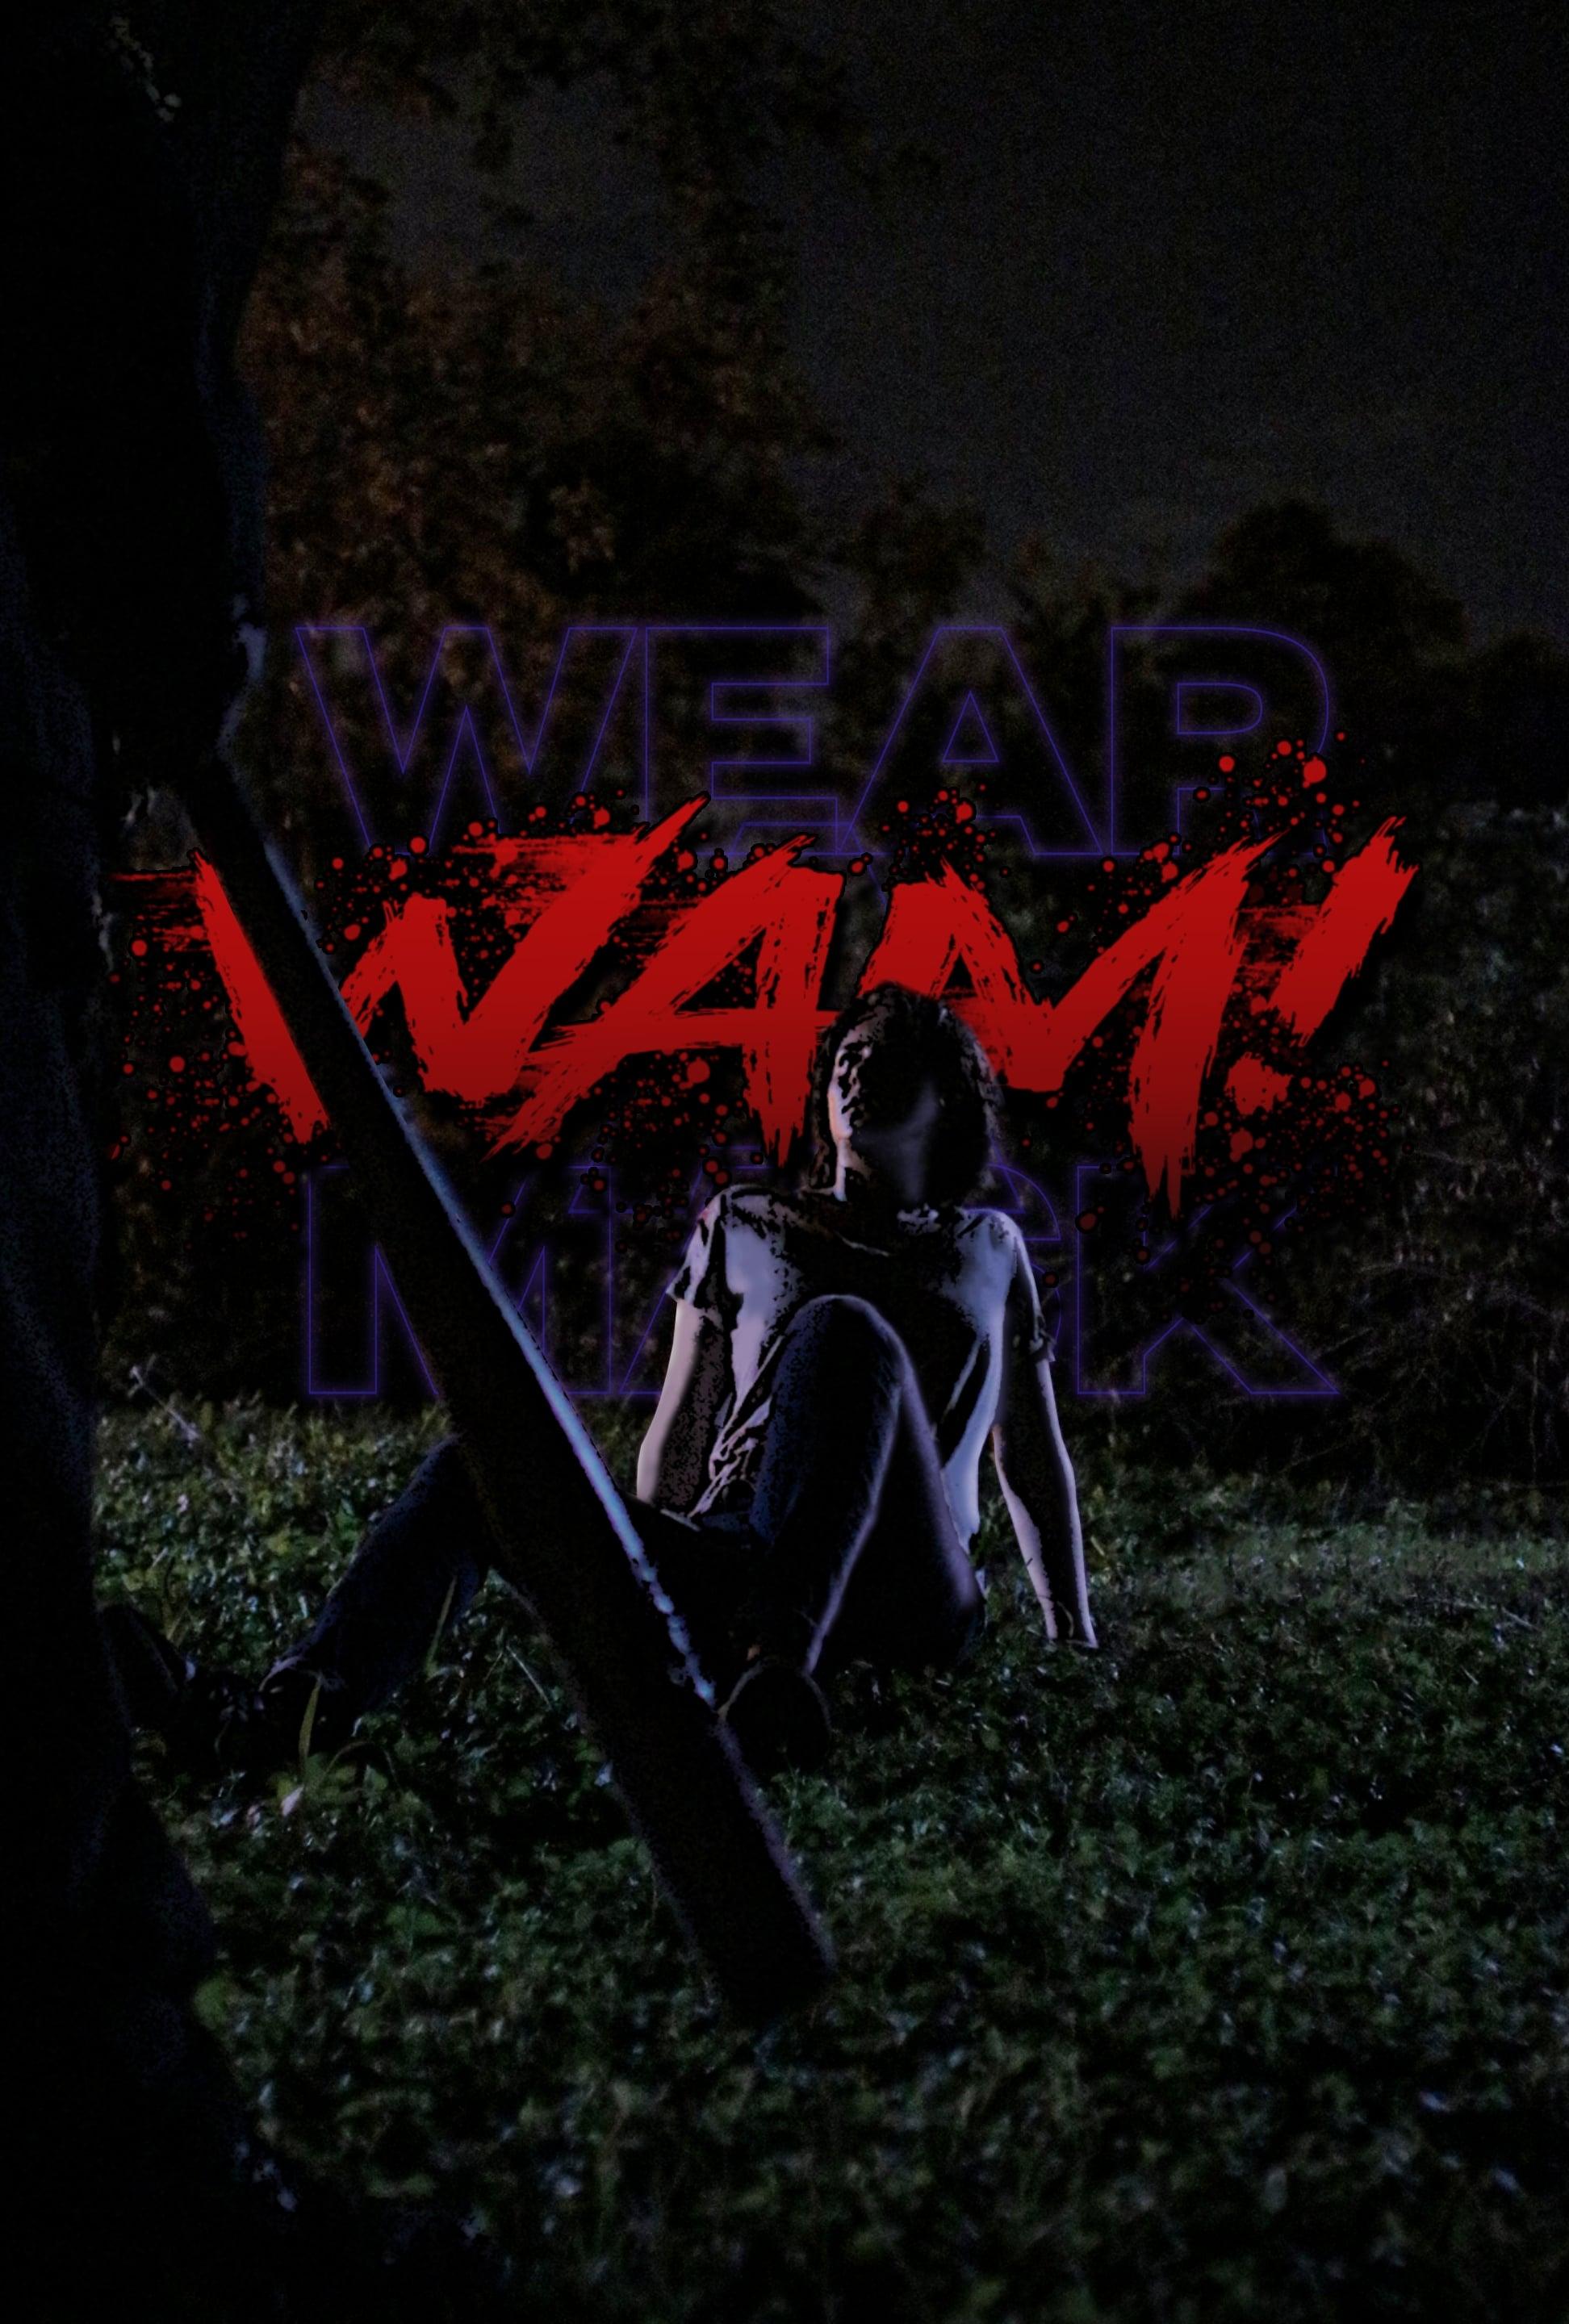 WAM!: Wear A Mask! poster